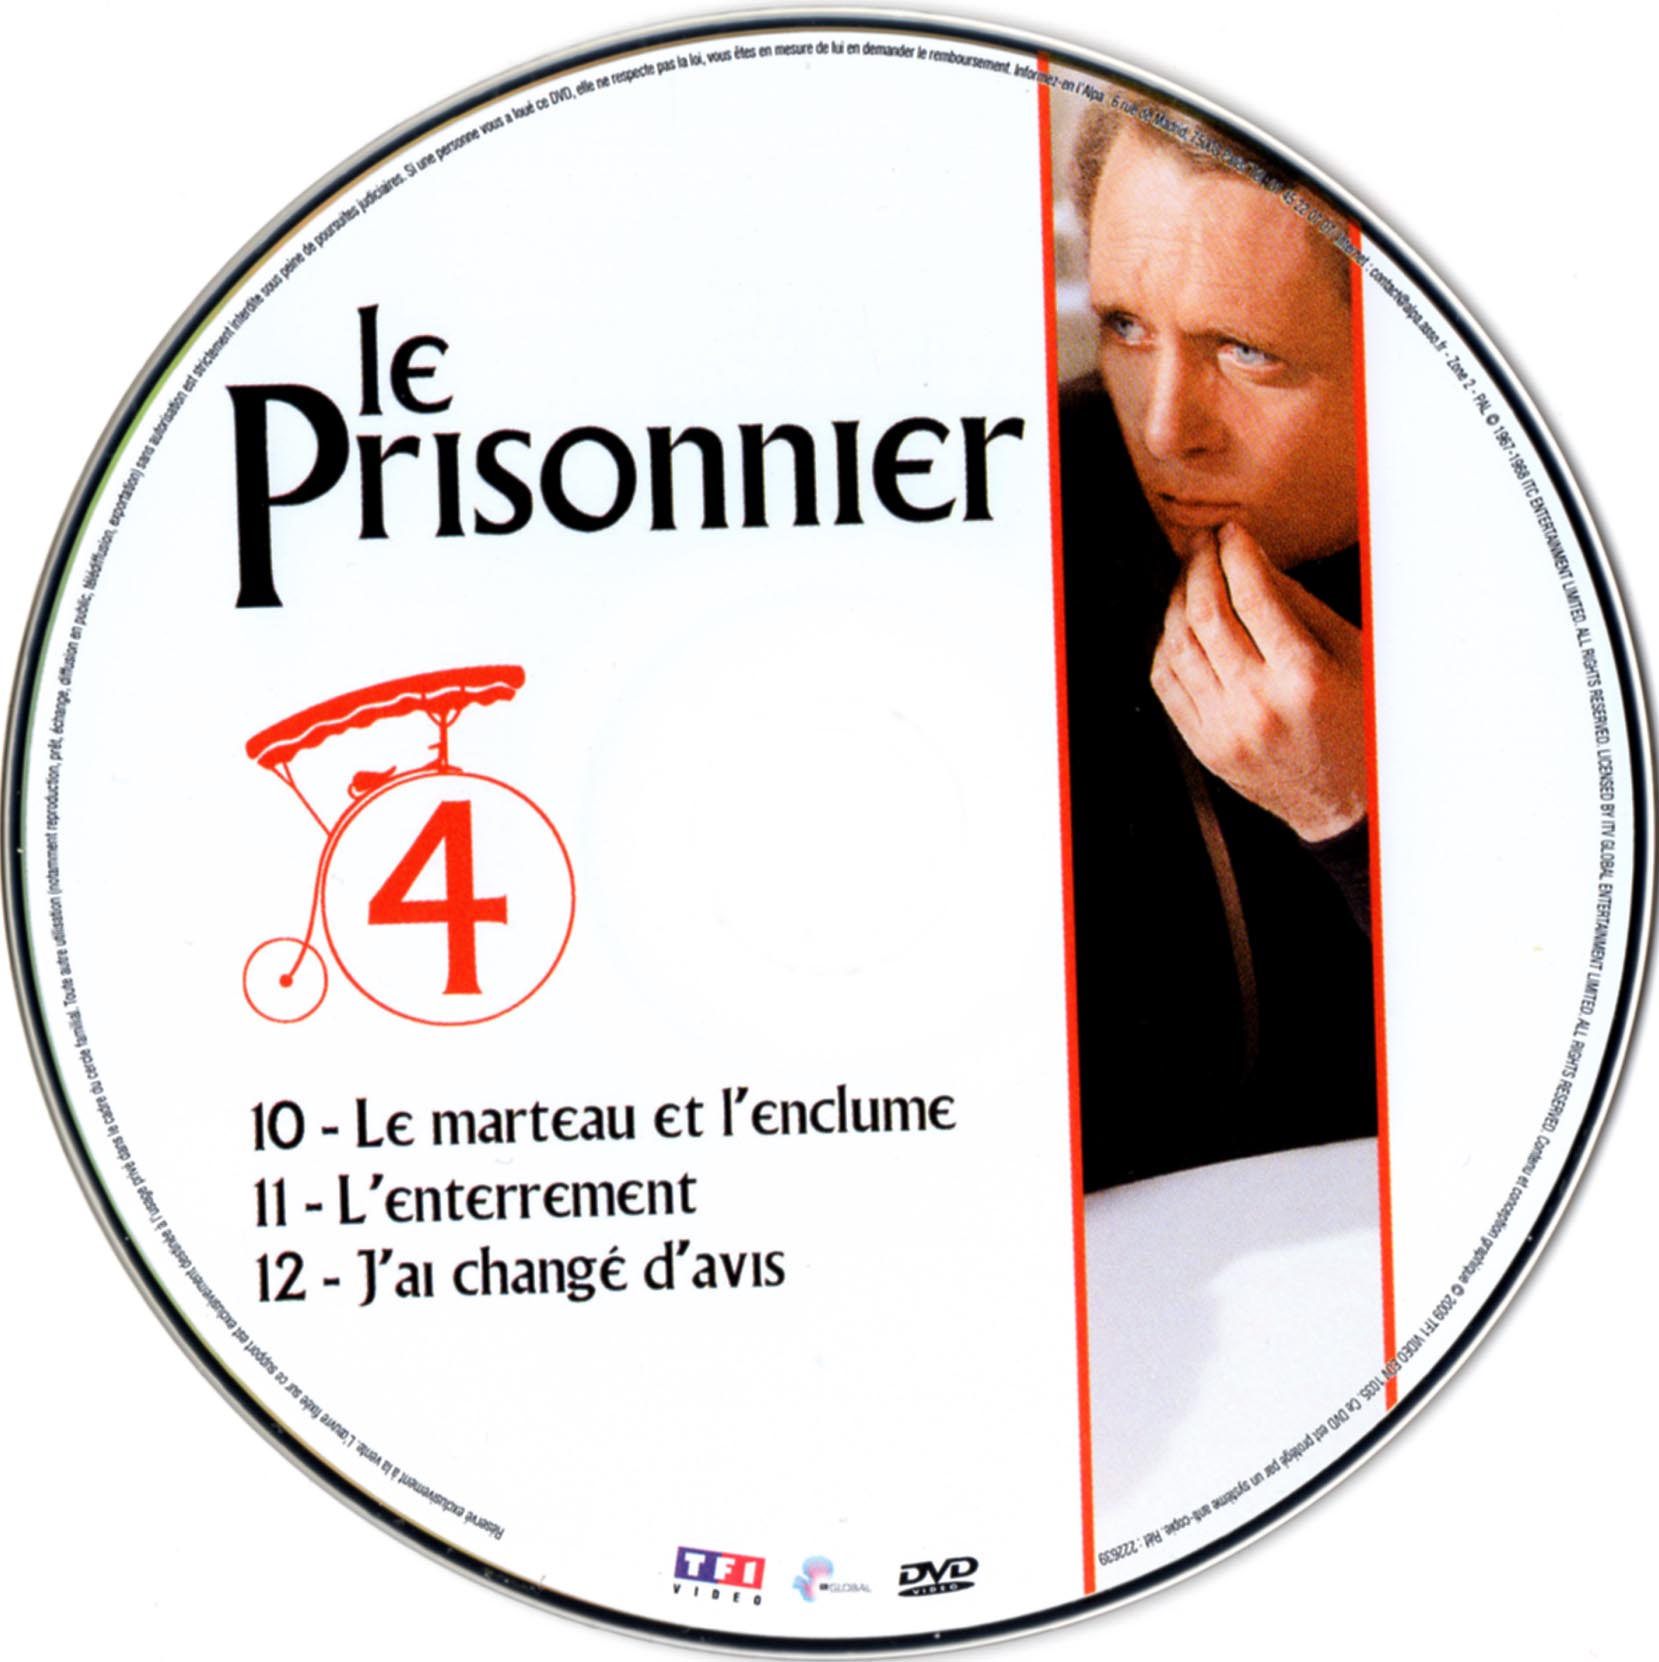 Le prisonnier DISC 4